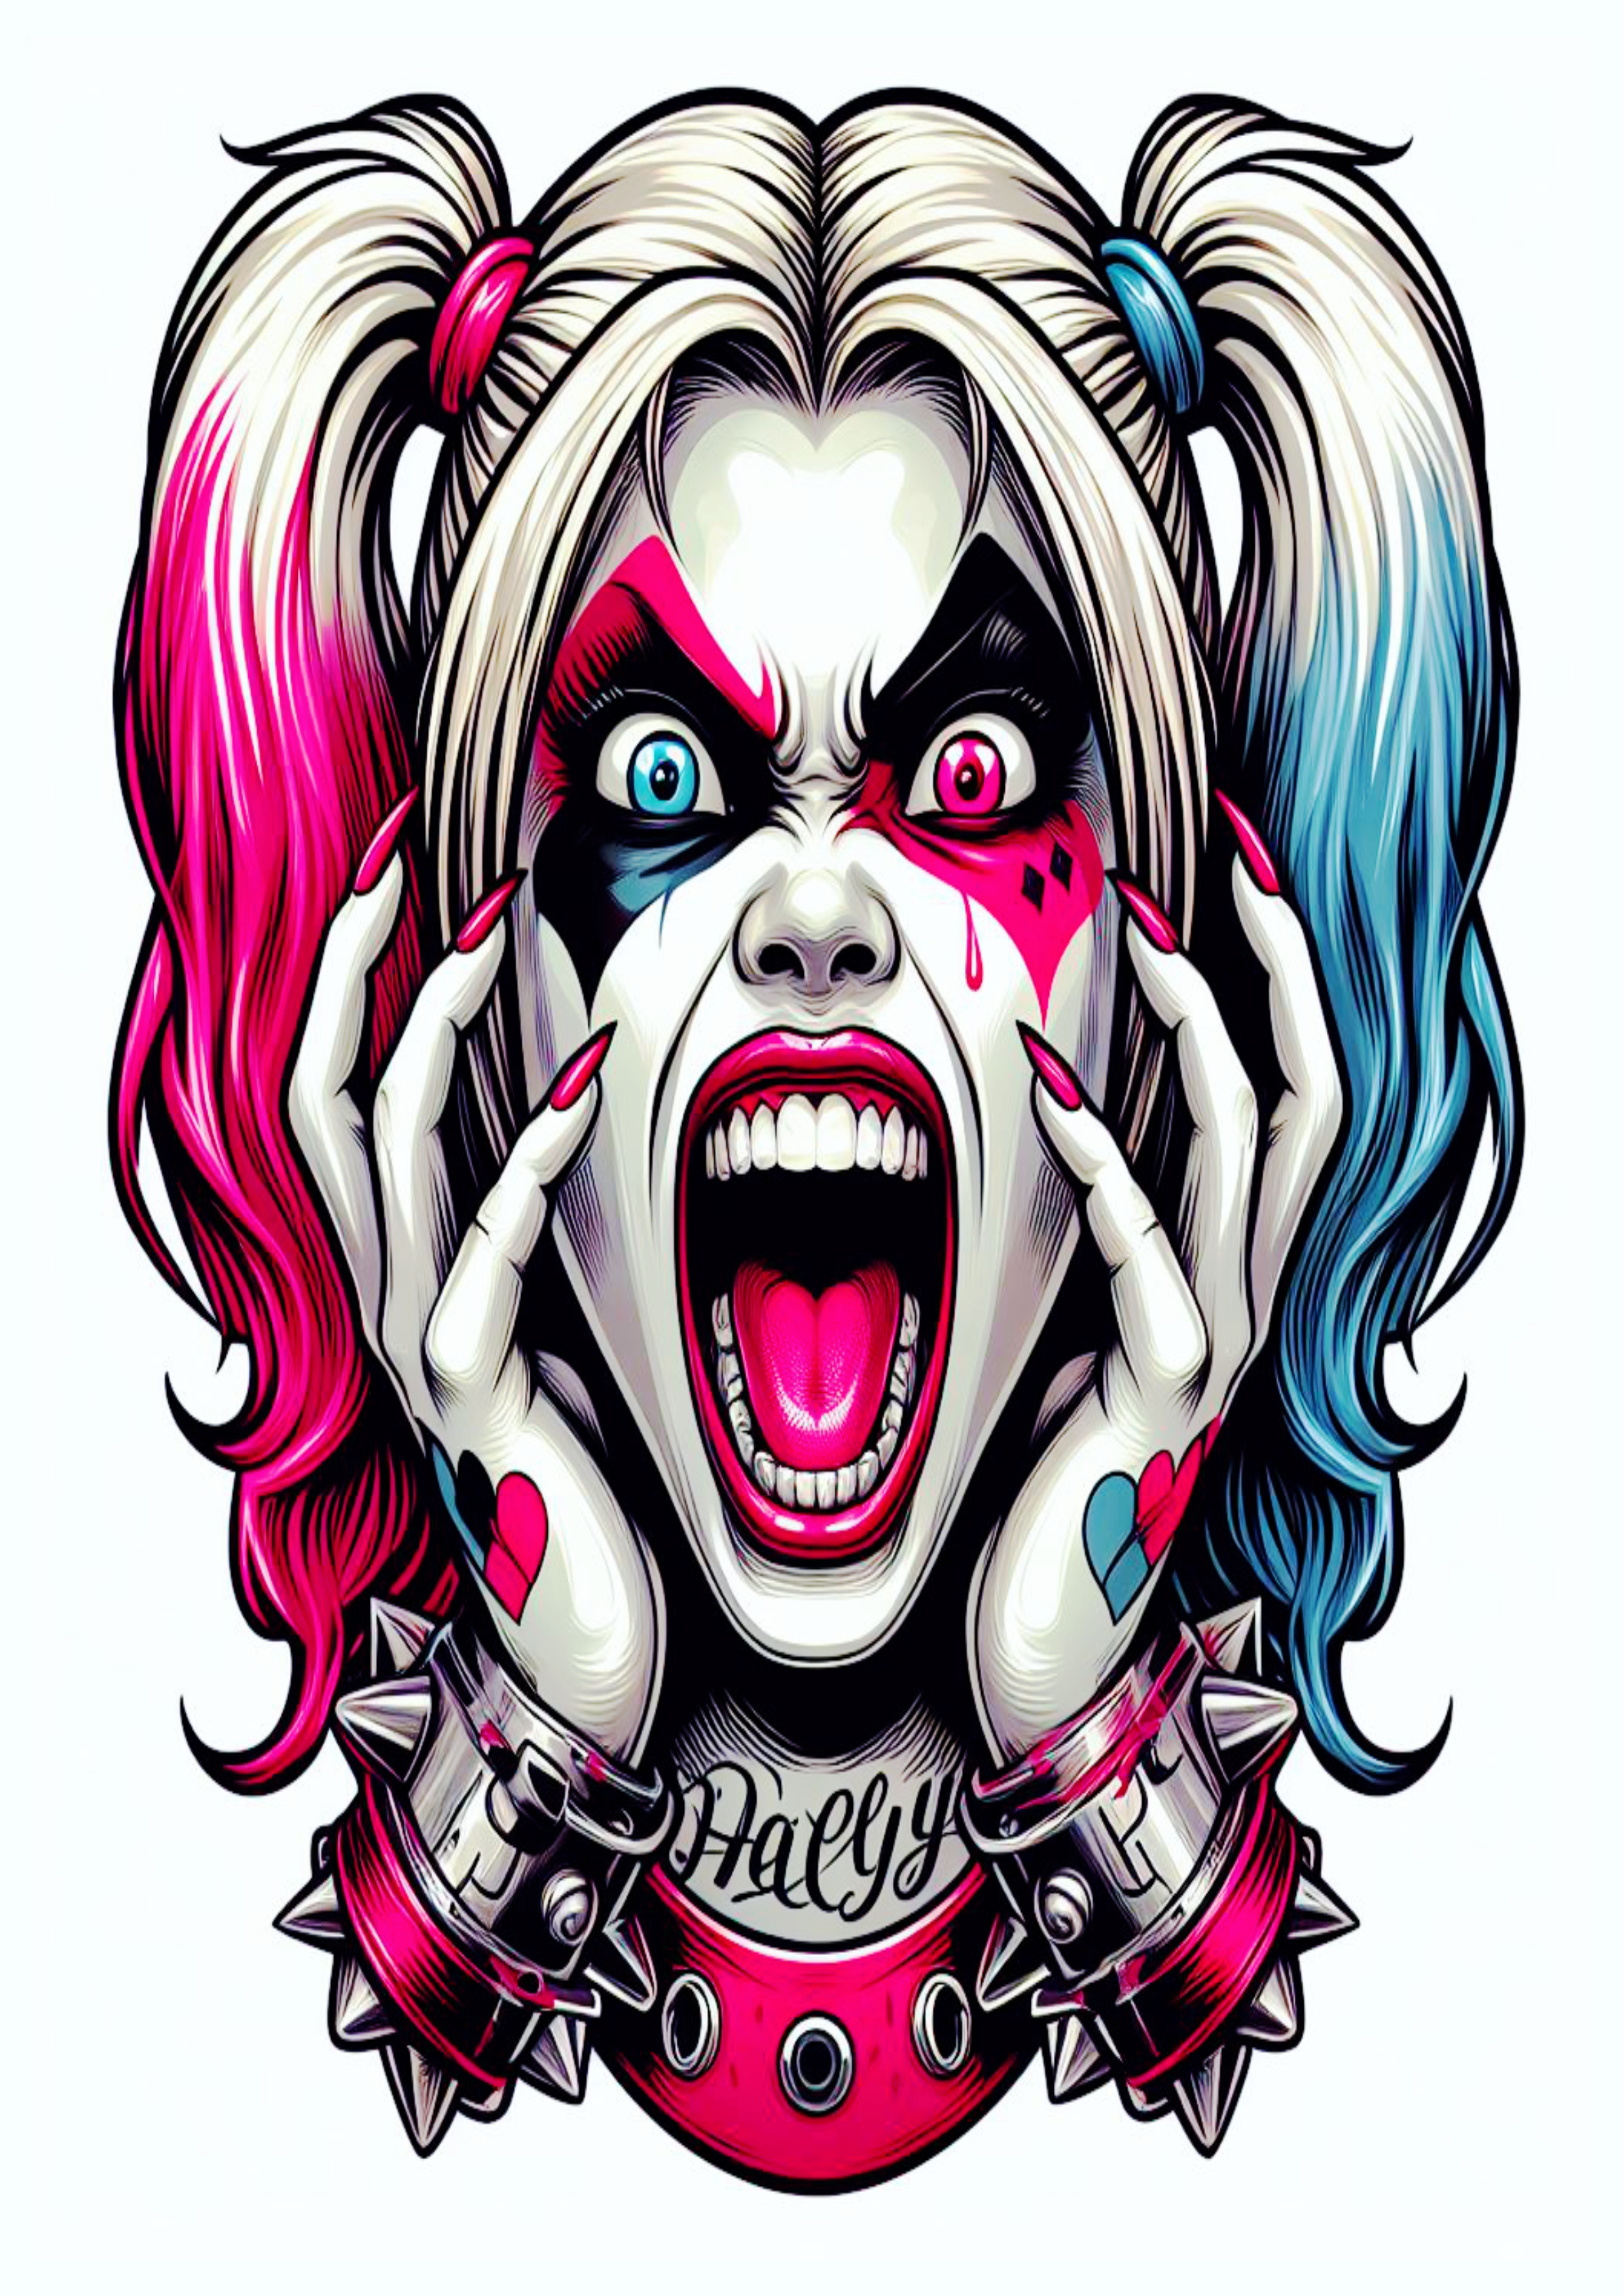 Arlequina desenho colorido para tatuagem psicodélica desespero Harley Quinn artes visuais png